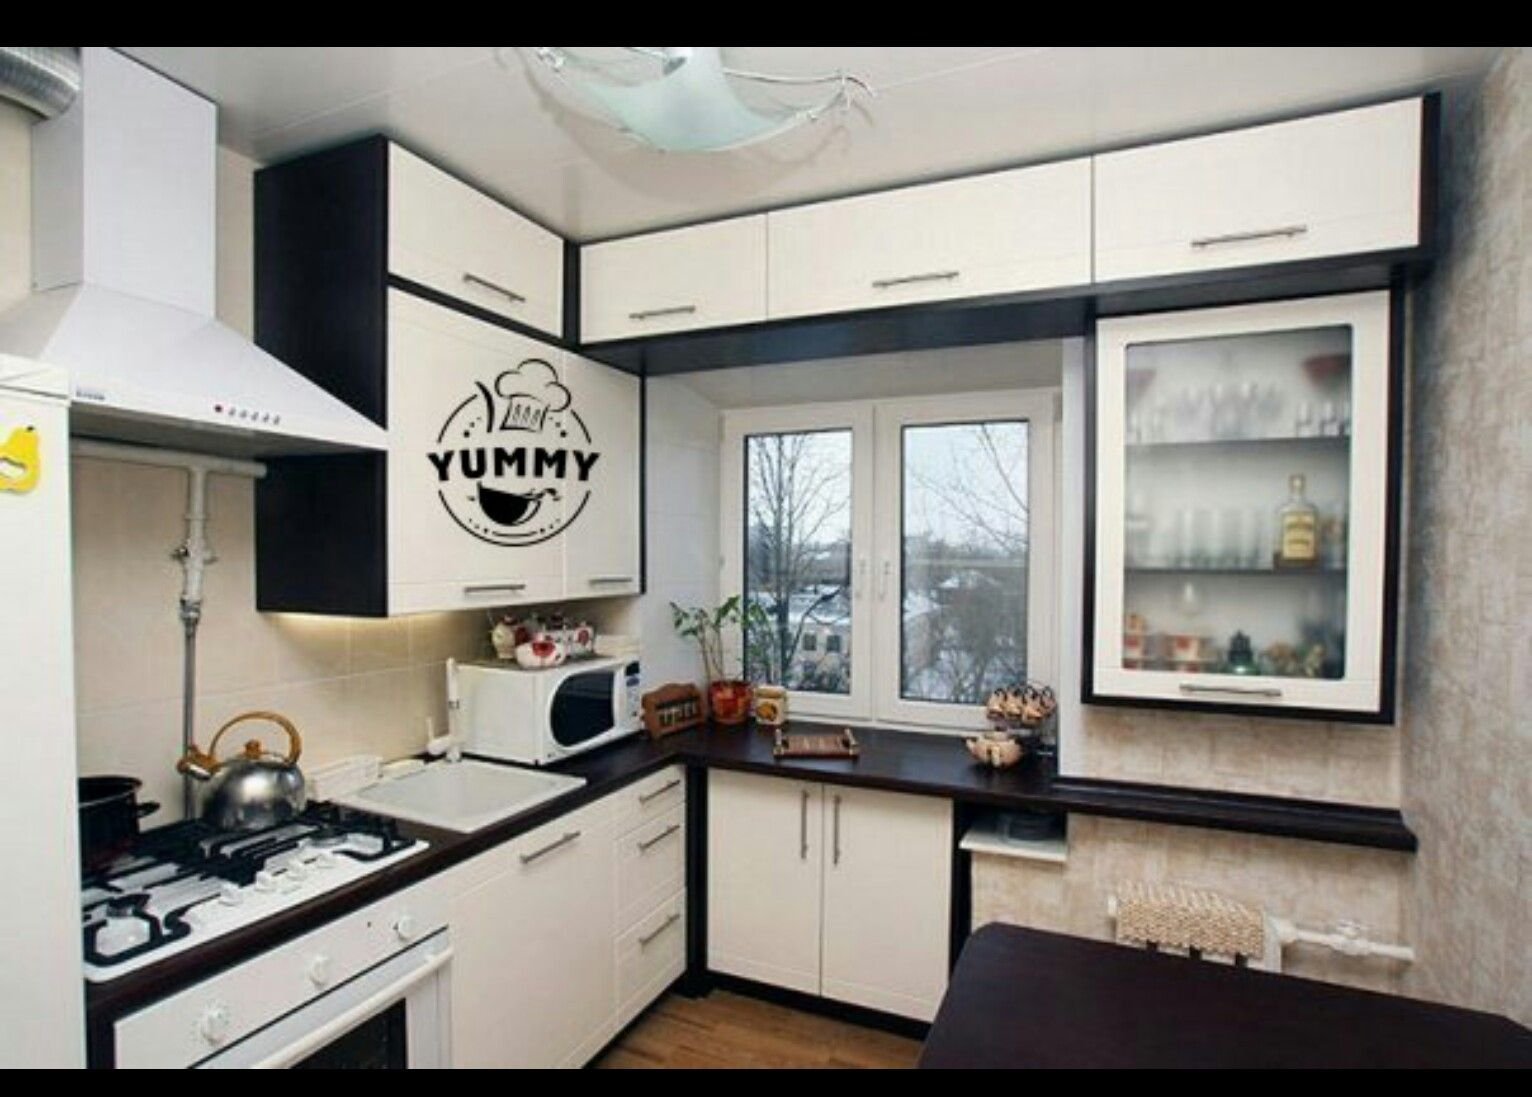 угловая кухня 7 кв м дизайн с холодильником